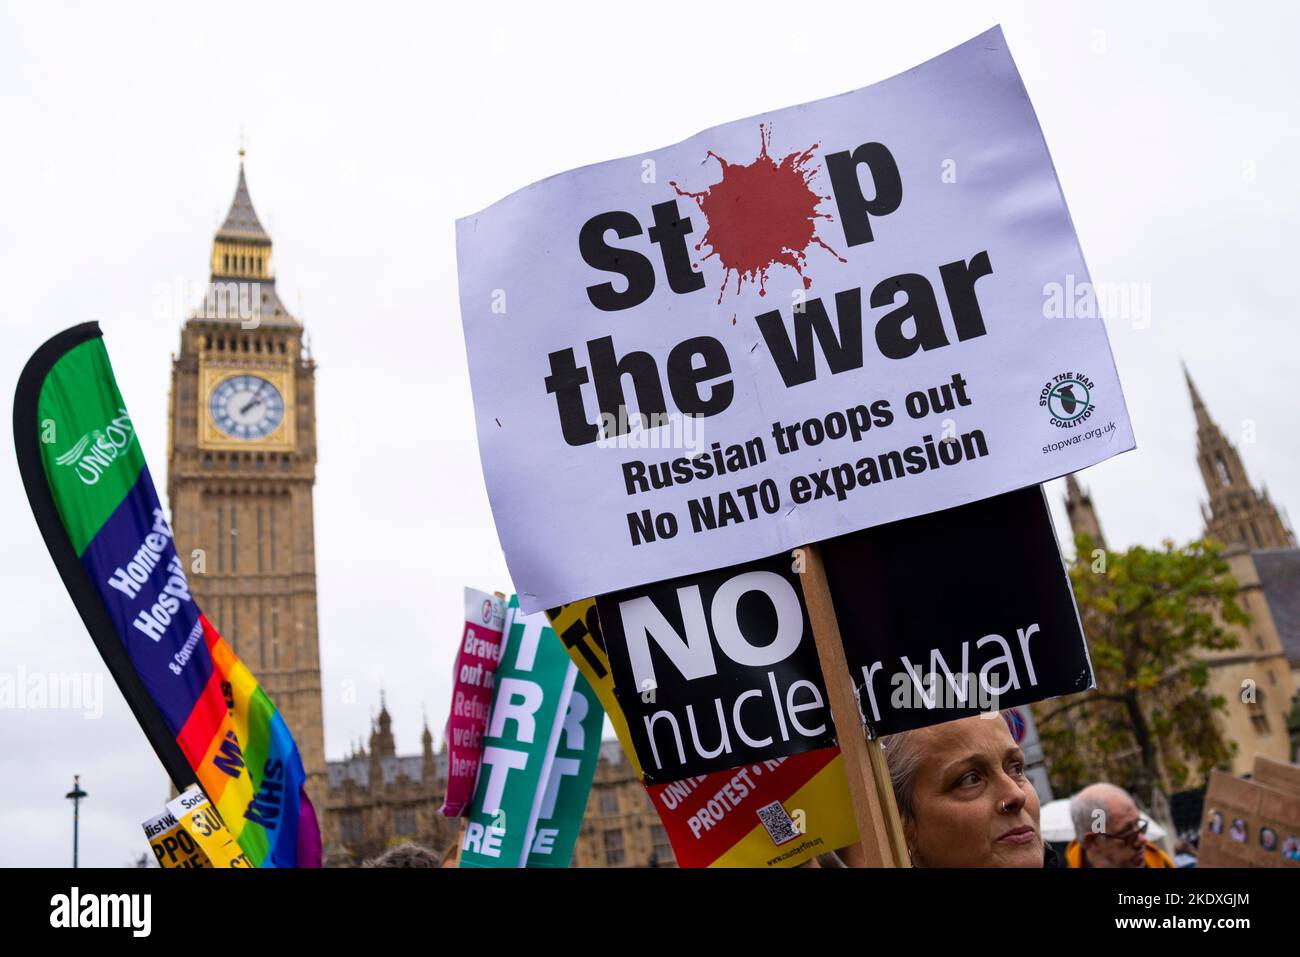 Arrêtez la plaque de la guerre lors d'une manifestation à Londres contre les mesures d'austérité du gouvernement conservateur, appelant à des élections générales. Pas de guerre nucléaire Banque D'Images